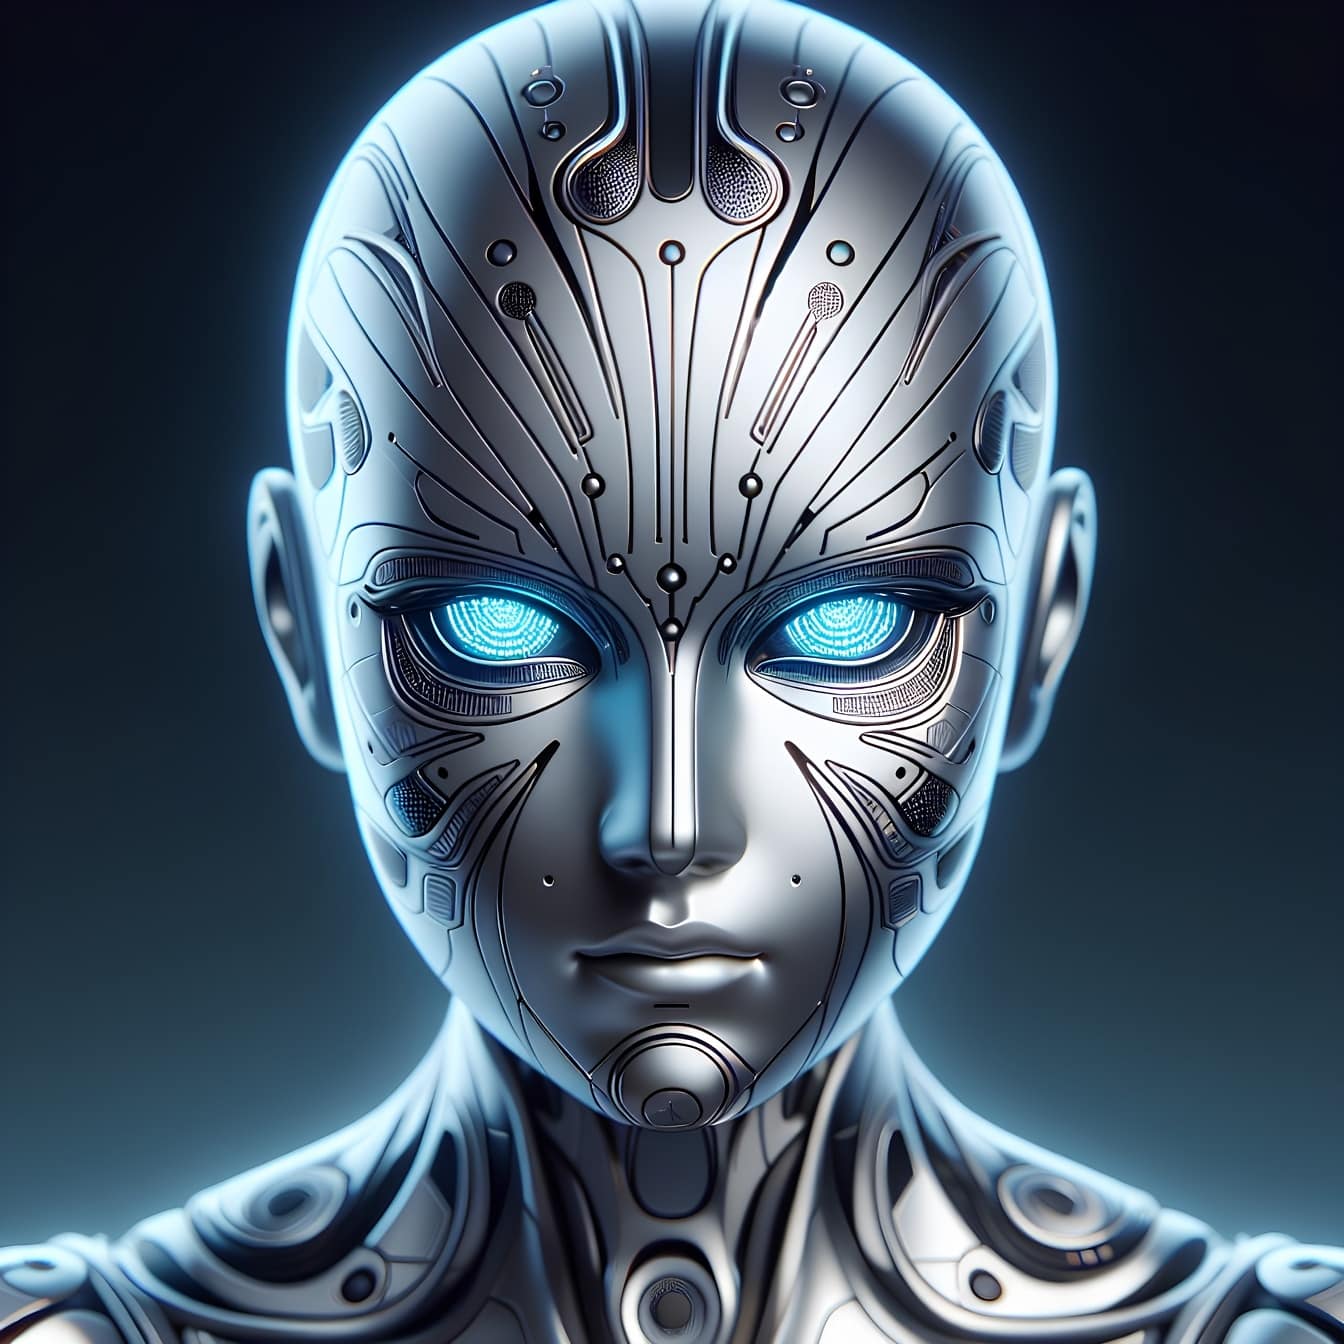 Bir android robotun başı, yapay zekaya ve parlayan gözlere sahip bir cyborg-dünya dışı